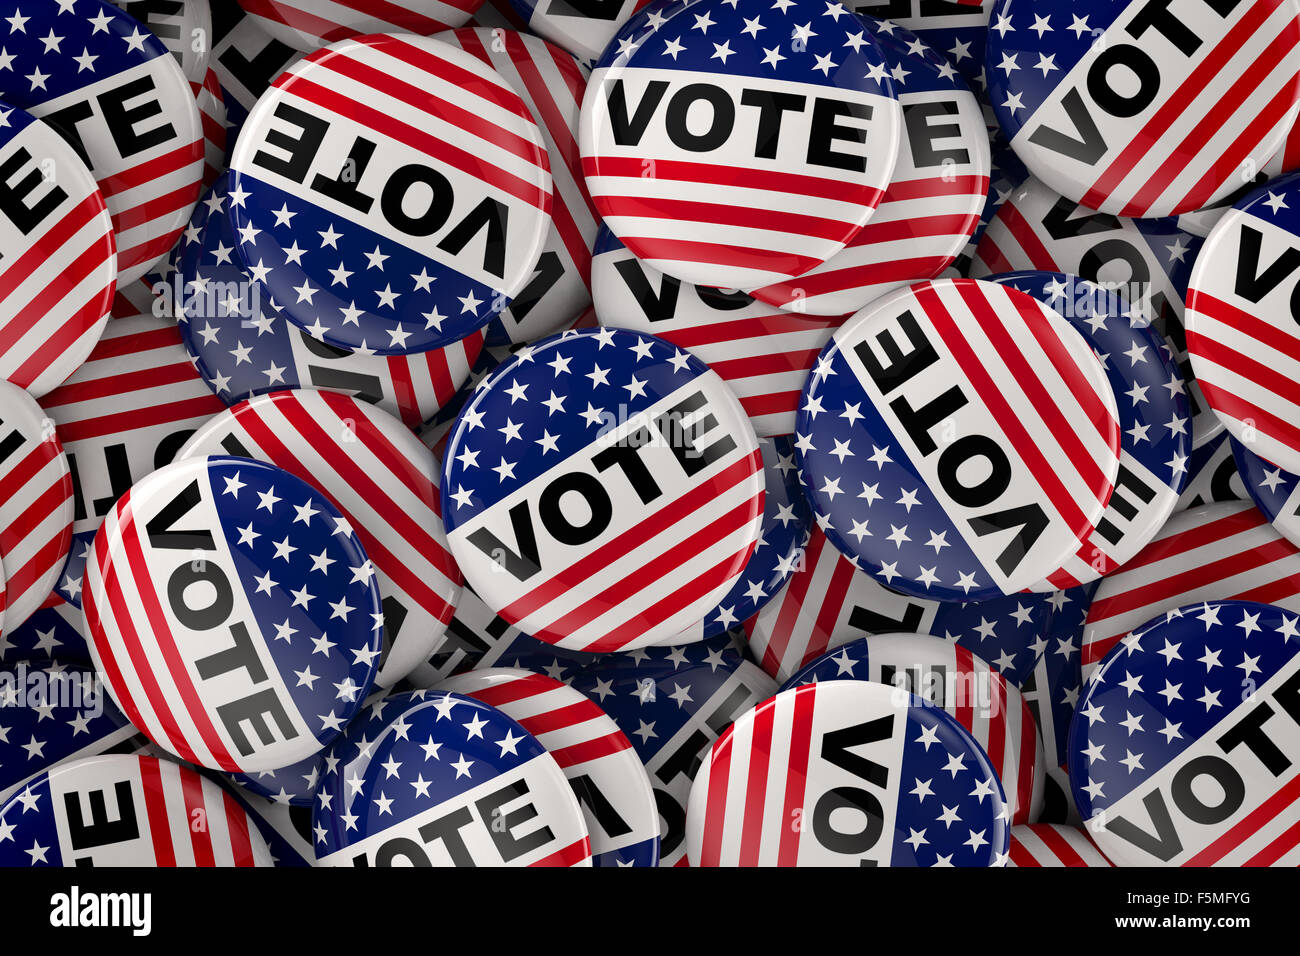 Drapeau américain inspirée des boutons de vote Banque D'Images